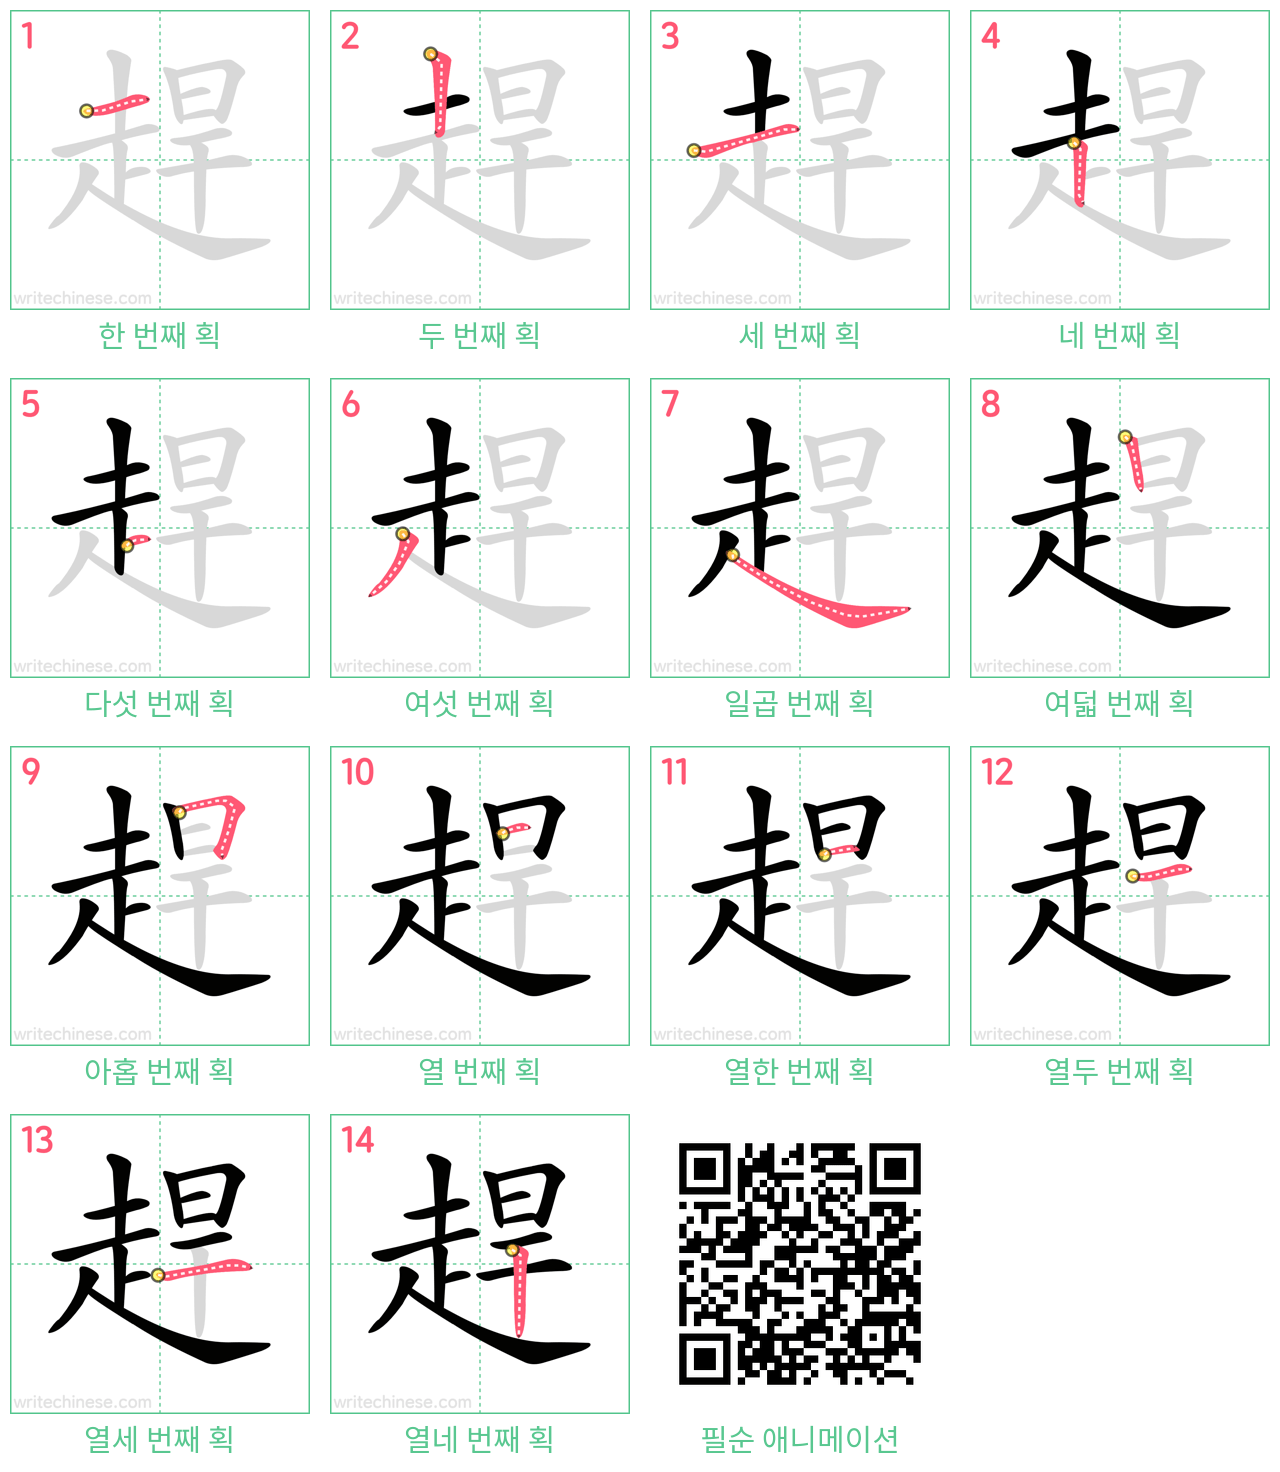 趕 step-by-step stroke order diagrams